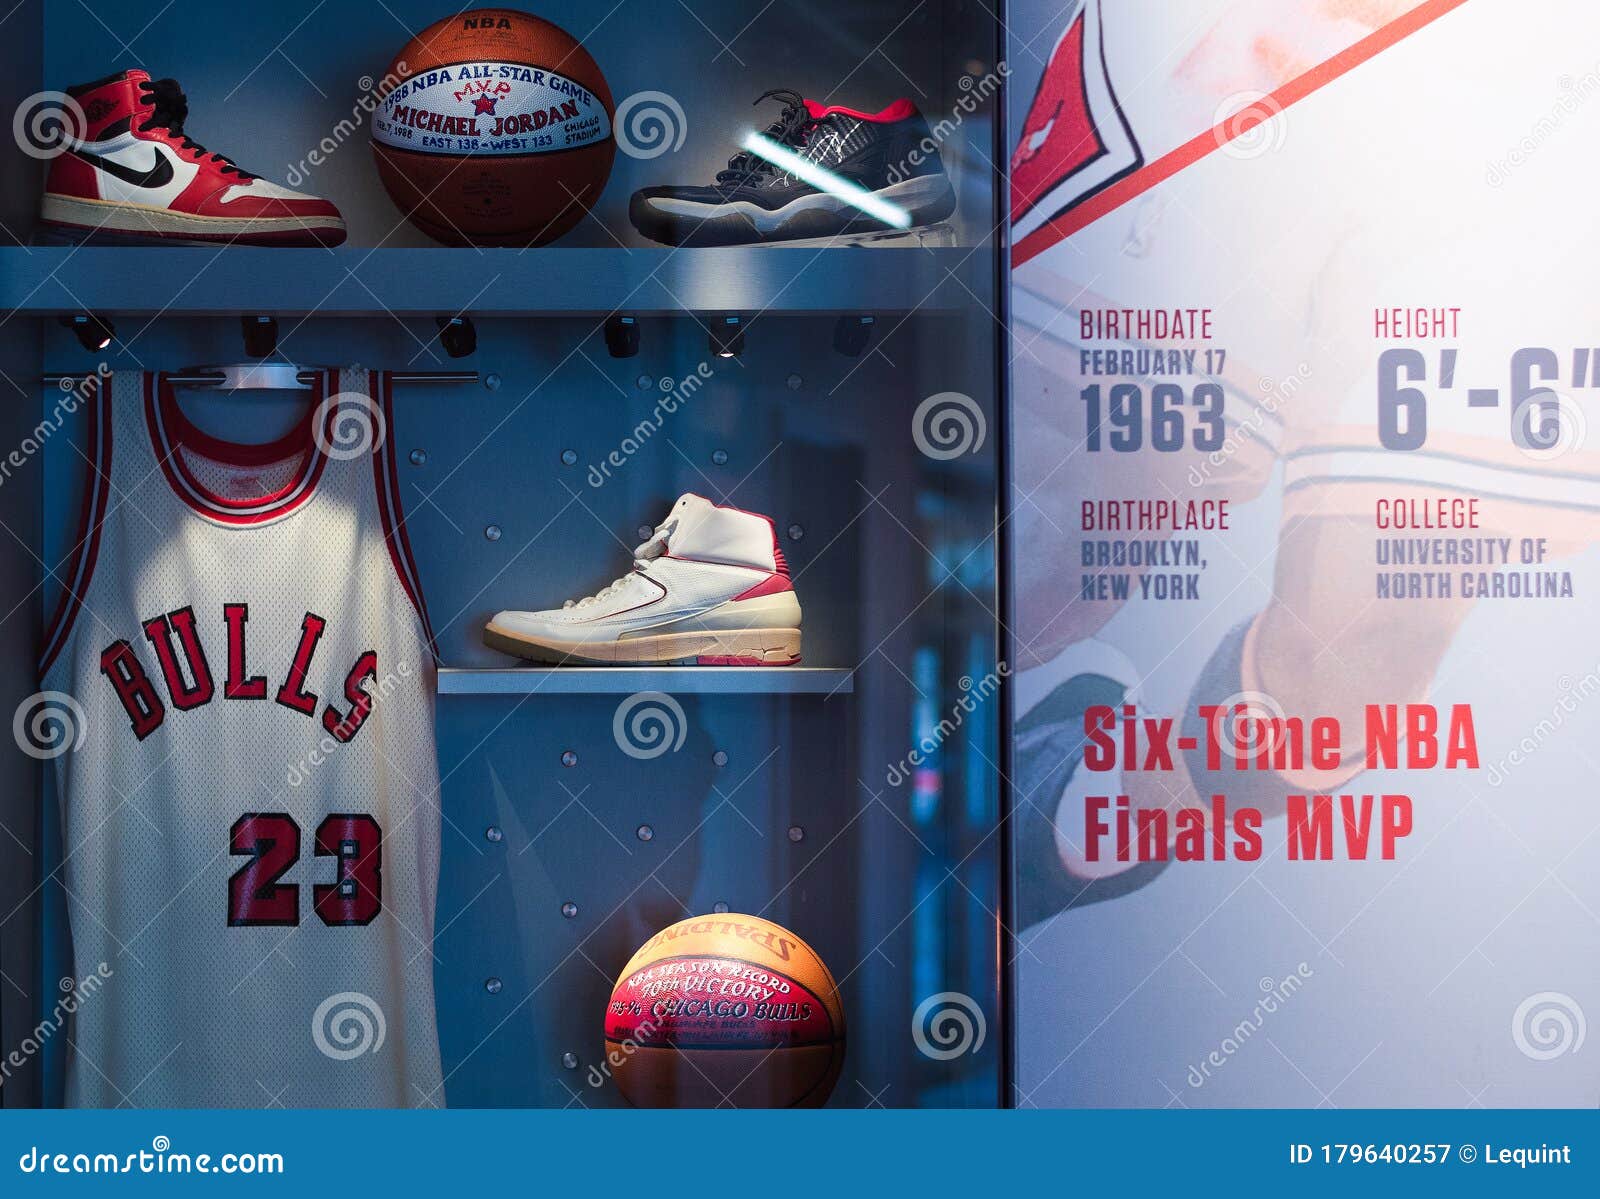 Michael Jordan Jersey and Sports Memorabilia Chicago Bulls Number